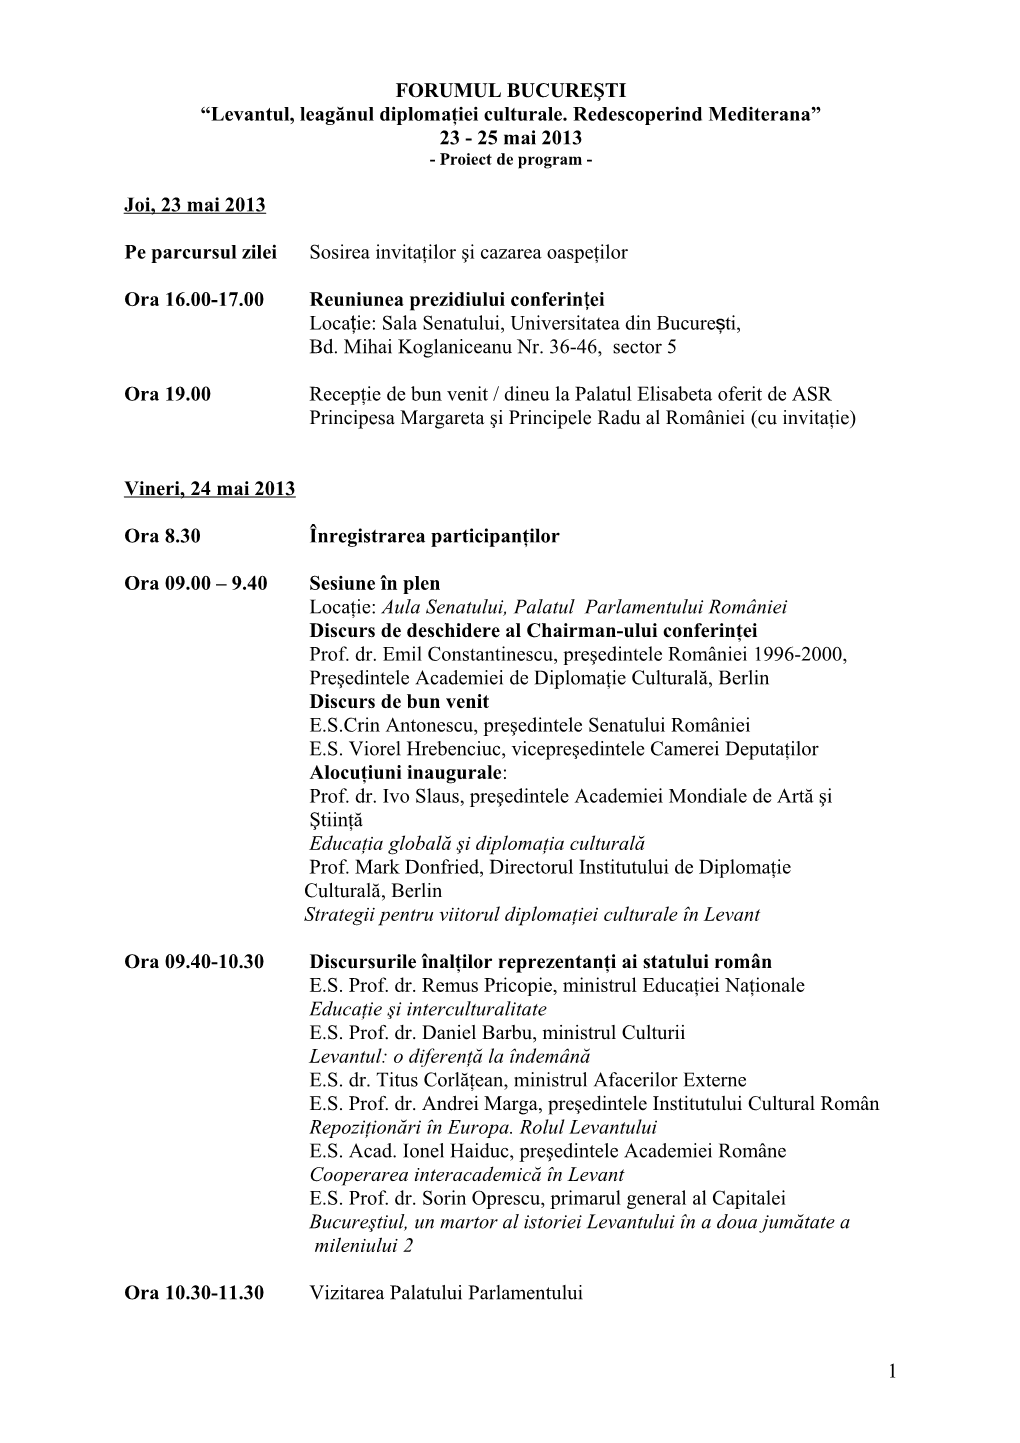 Programul Forumului Bucureşti